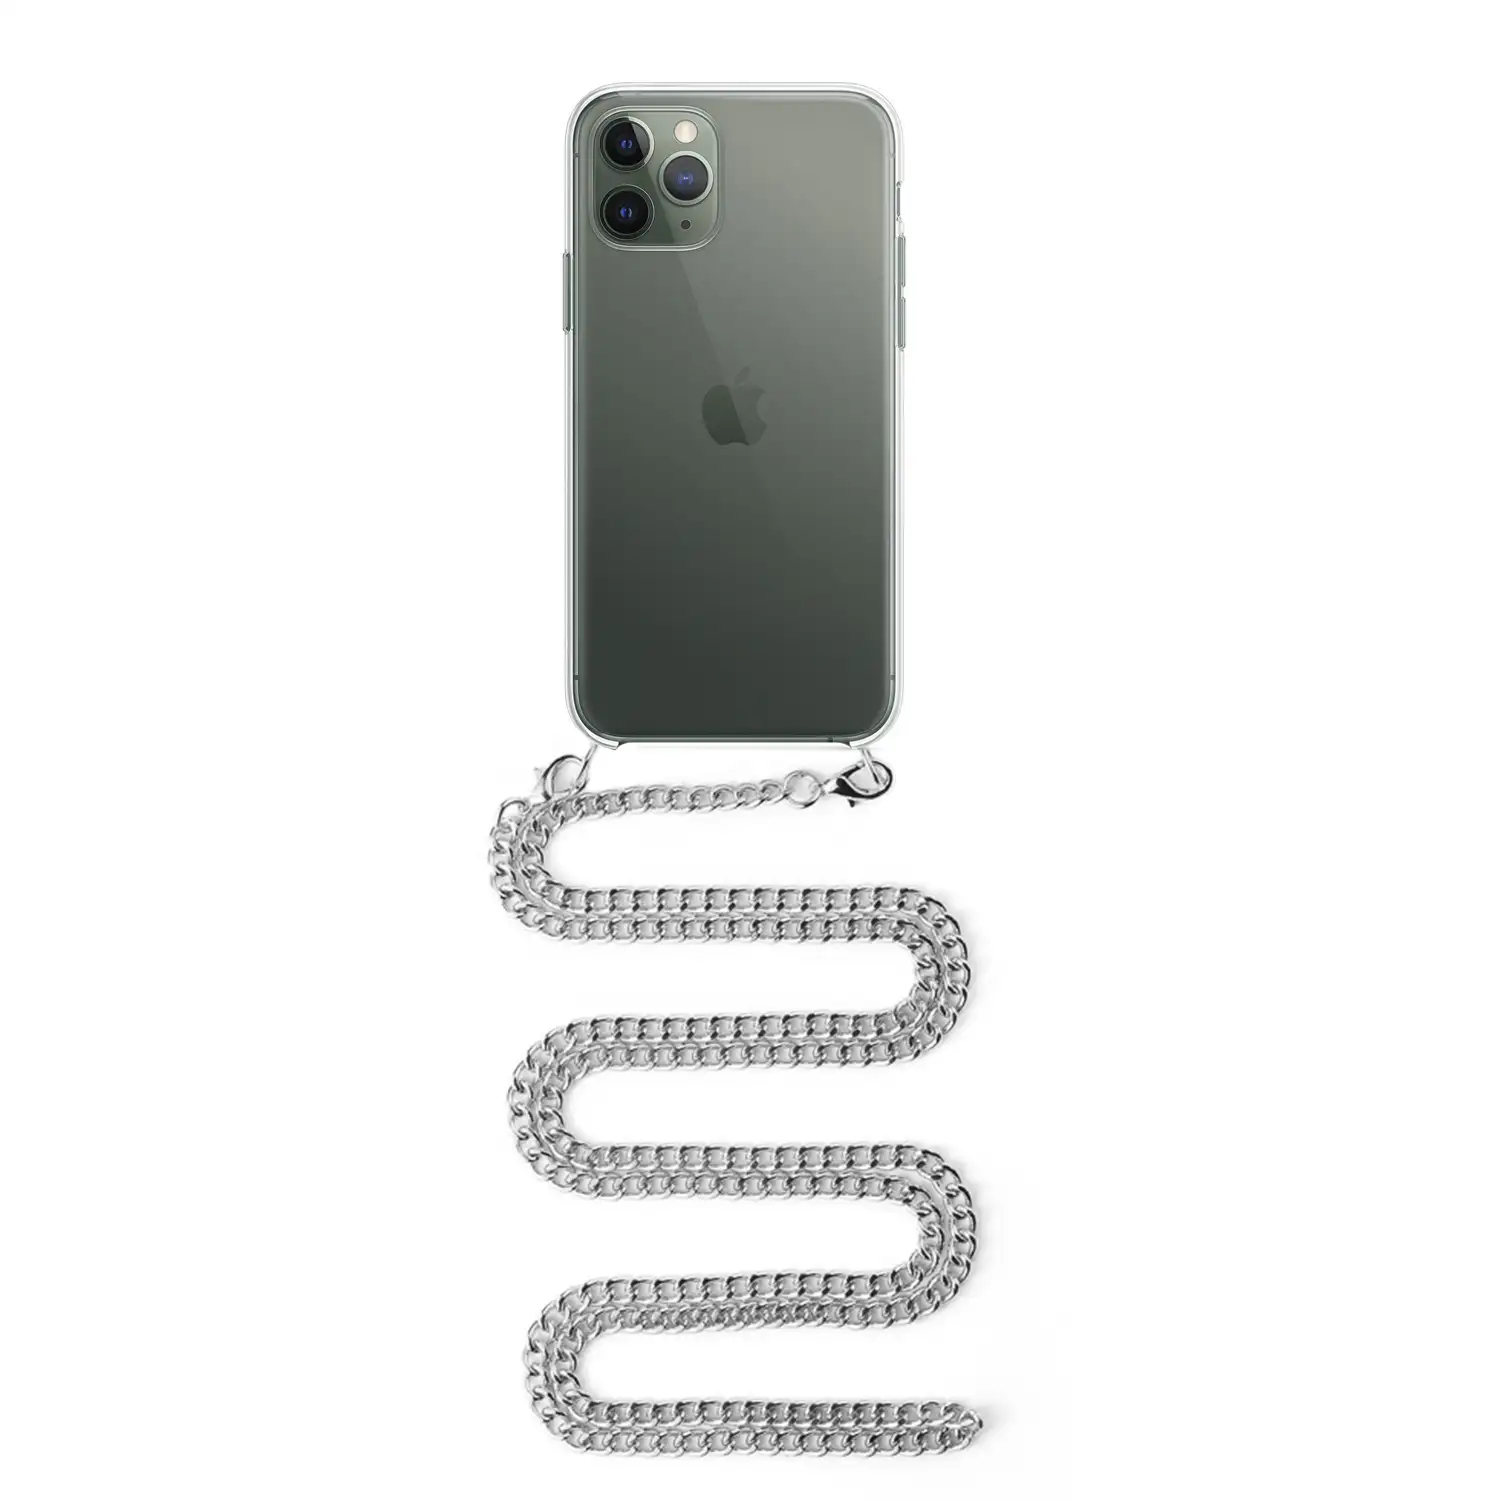 Carcasa transparente iPhone 11 Pro con colgante cadena metálica. Accesorio  de moda, ajuste perfecto y máxima